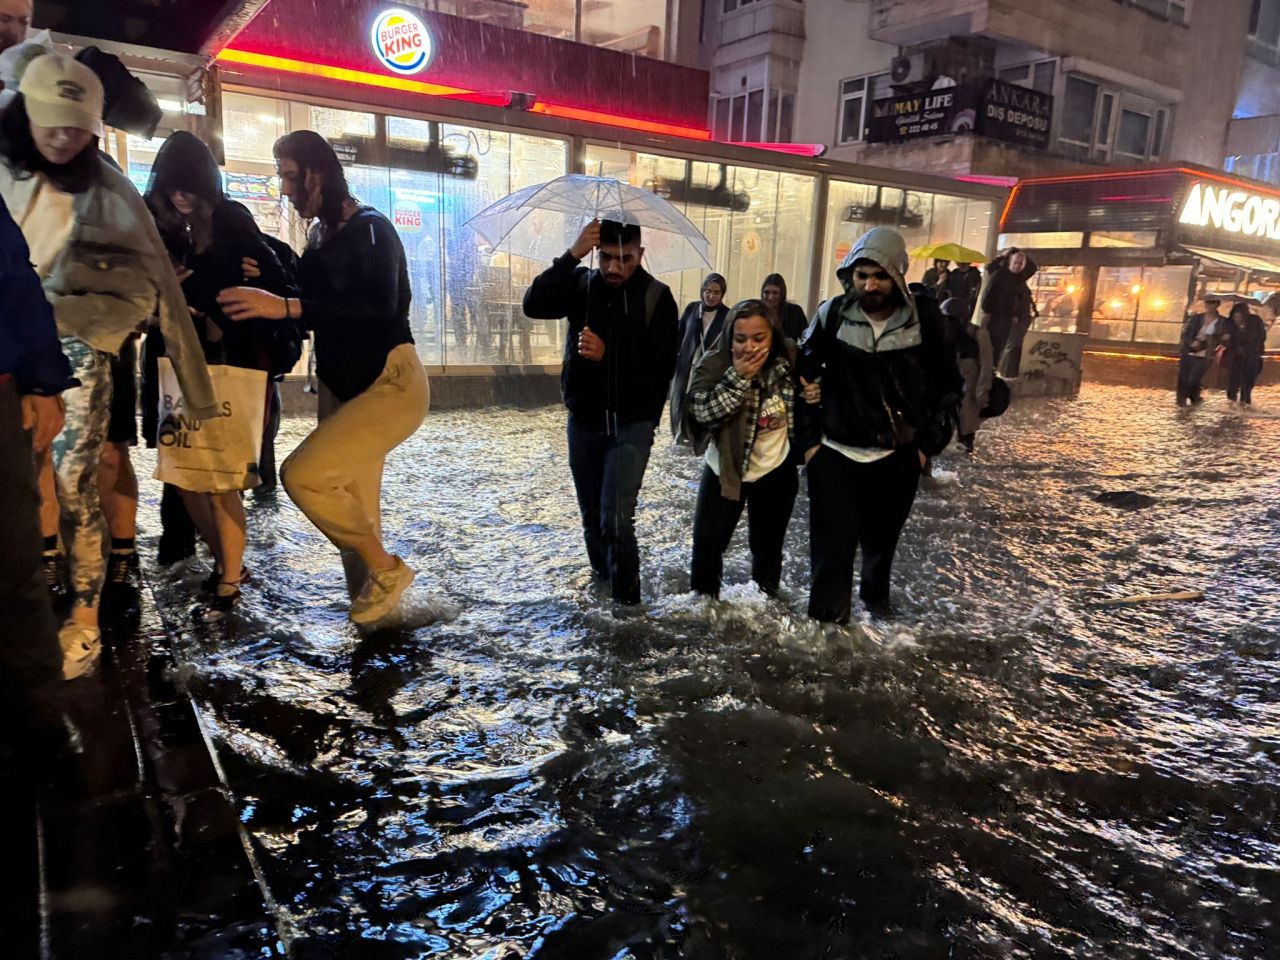 Yağışlar birden vurdu Meteoroloji uyarmıştı! Metro girişleri suyla doldu, kafeler yıkıldı - 2. Resim